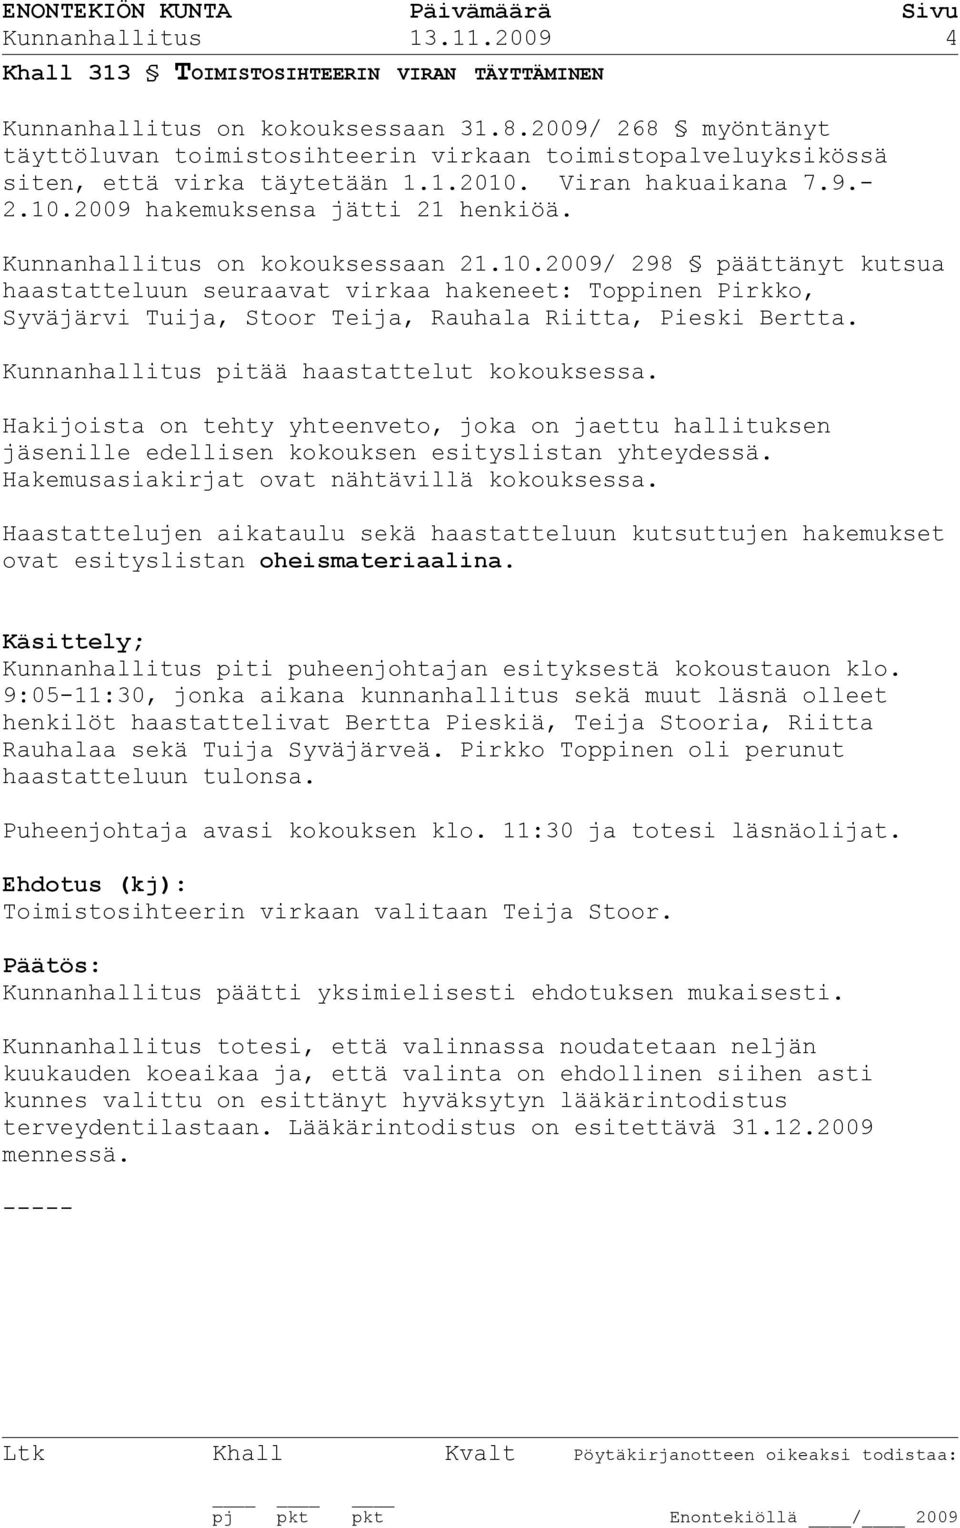 Kunnanhallitus on kokouksessaan 21.10.2009/ 298 päättänyt kutsua haastatteluun seuraavat virkaa hakeneet: Toppinen Pirkko, Syväjärvi Tuija, Stoor Teija, Rauhala Riitta, Pieski Bertta.